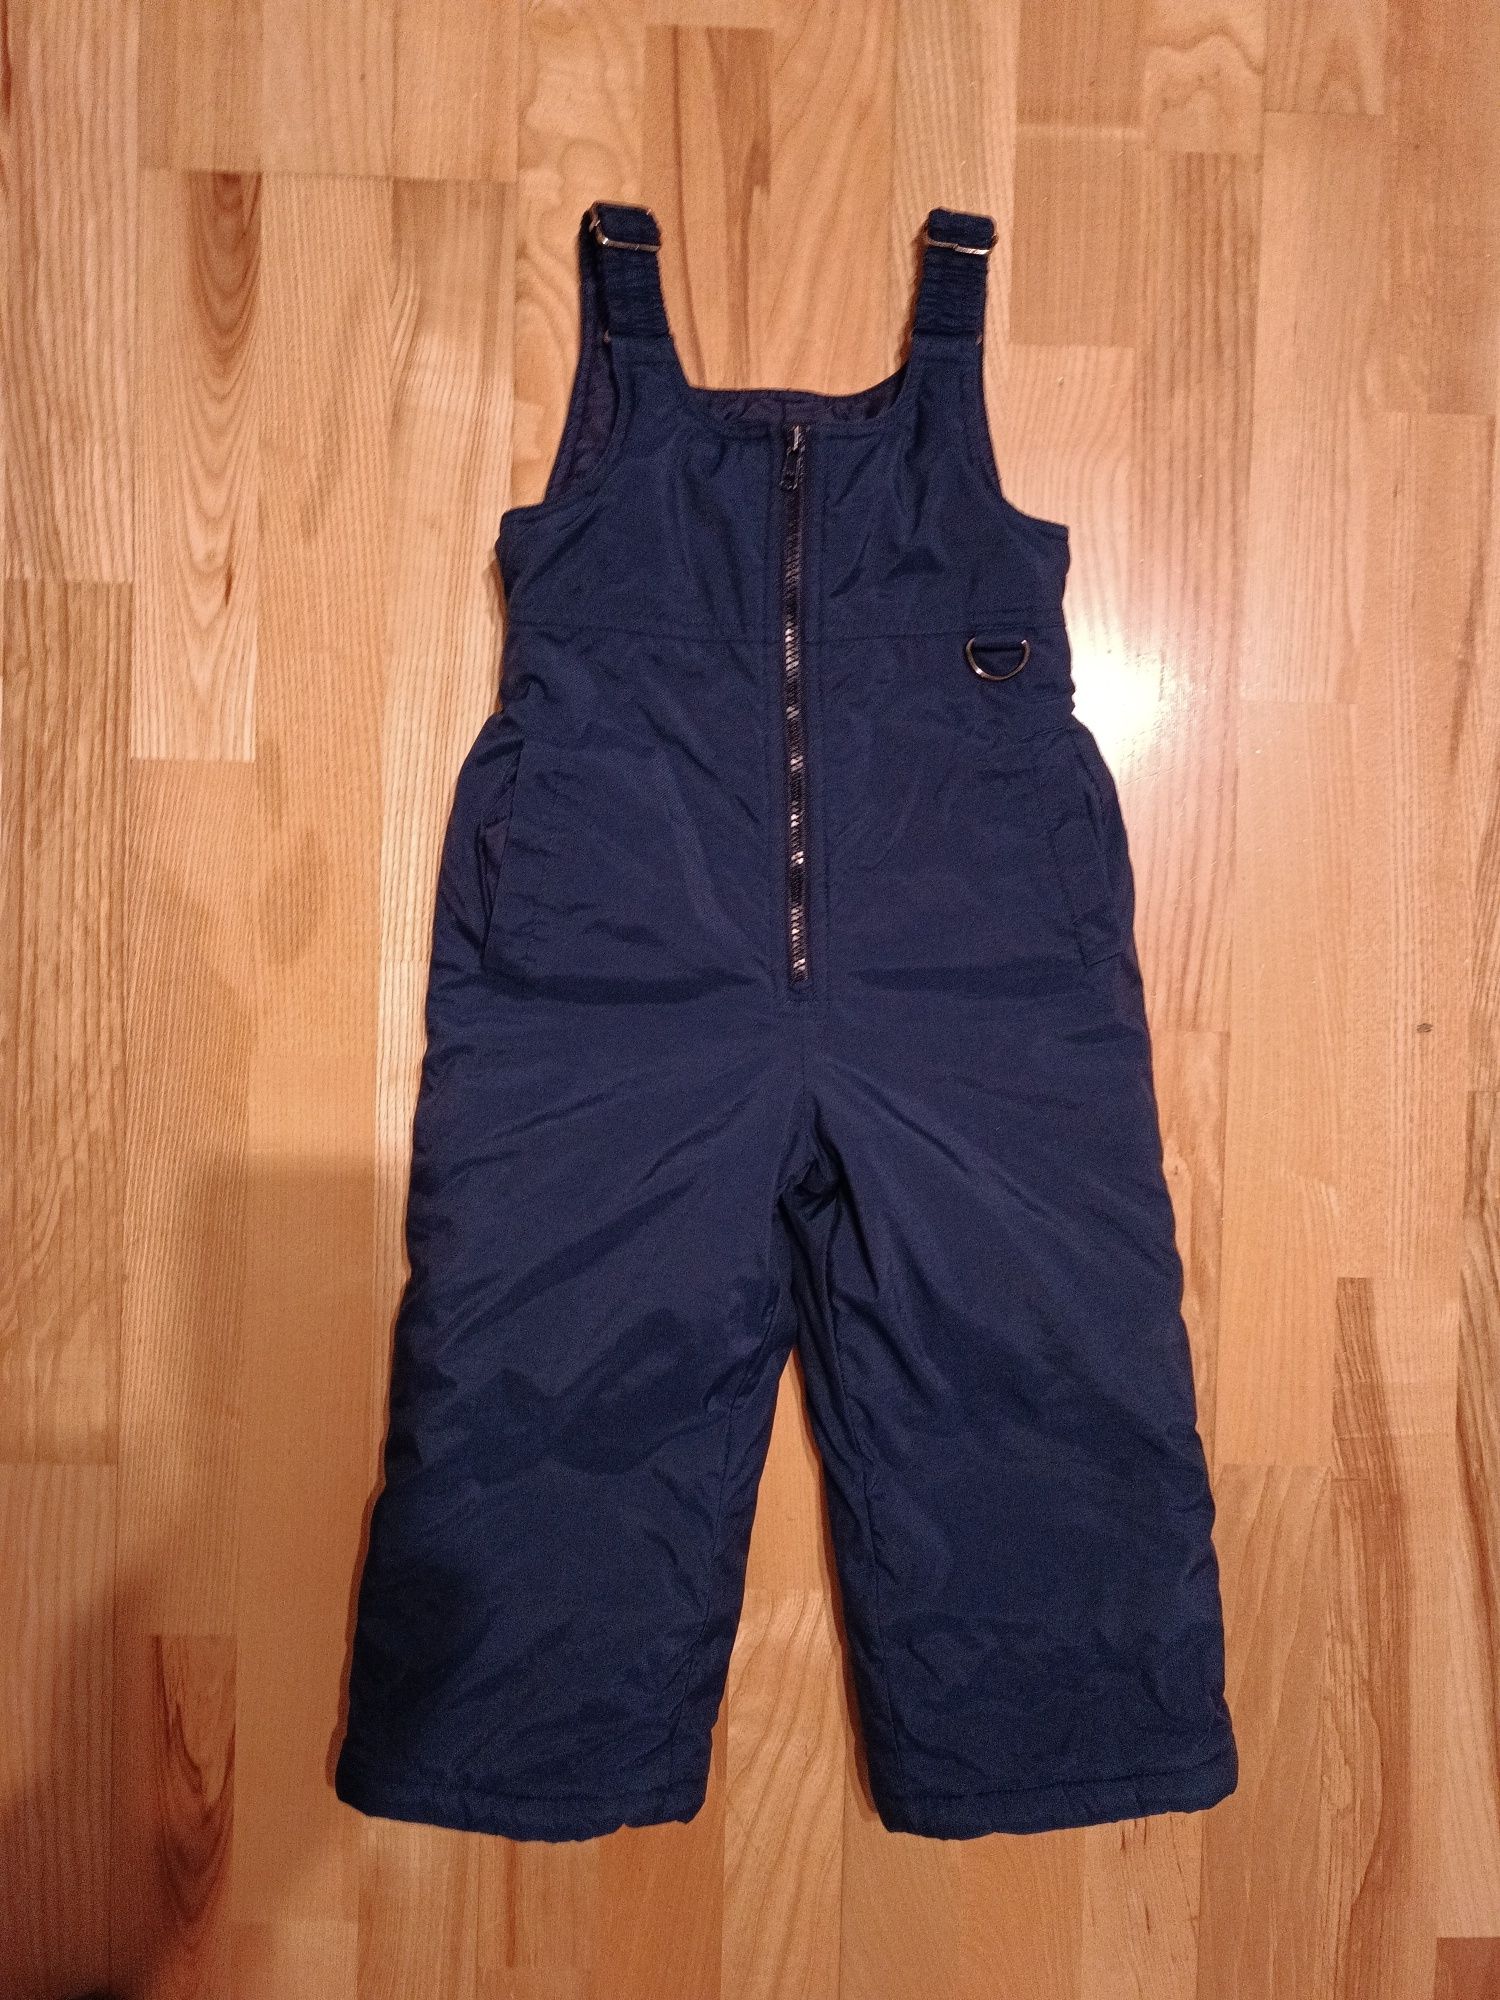 Granatowe spodnie kombinezon zimowy wodoodporny dla chłopca 98